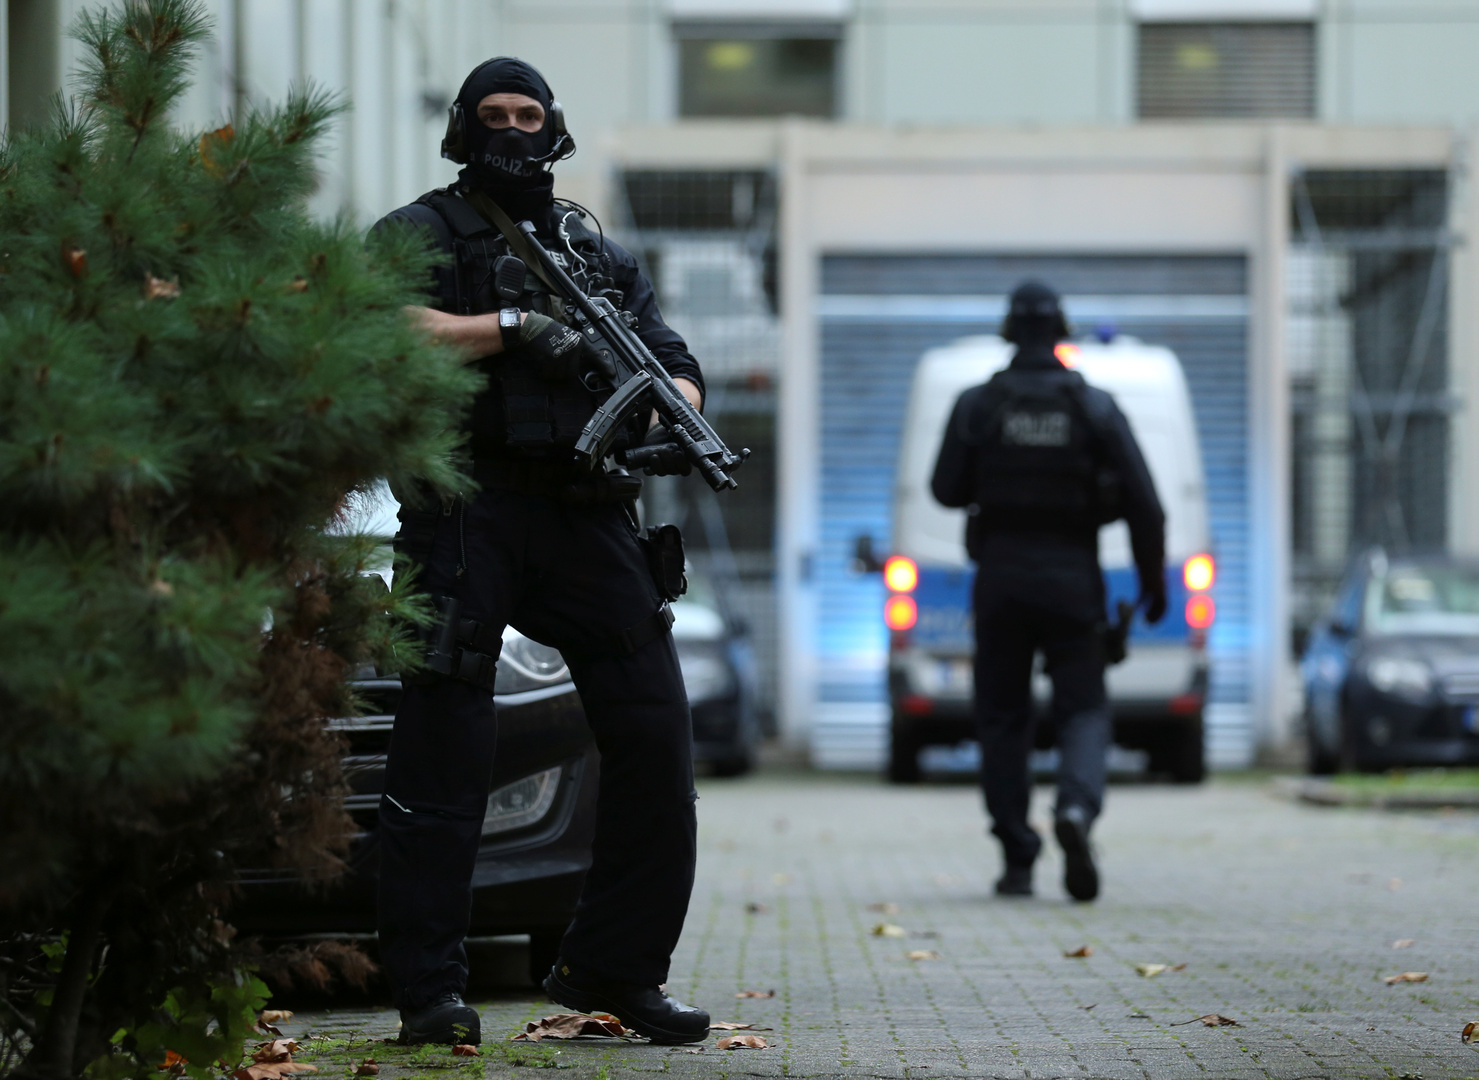 ارتفاع عدد قتلى الهجوم على مقهيين جنوب غربي ألمانيا إلى 9 أشخاص وتحديد هوية المنفذ